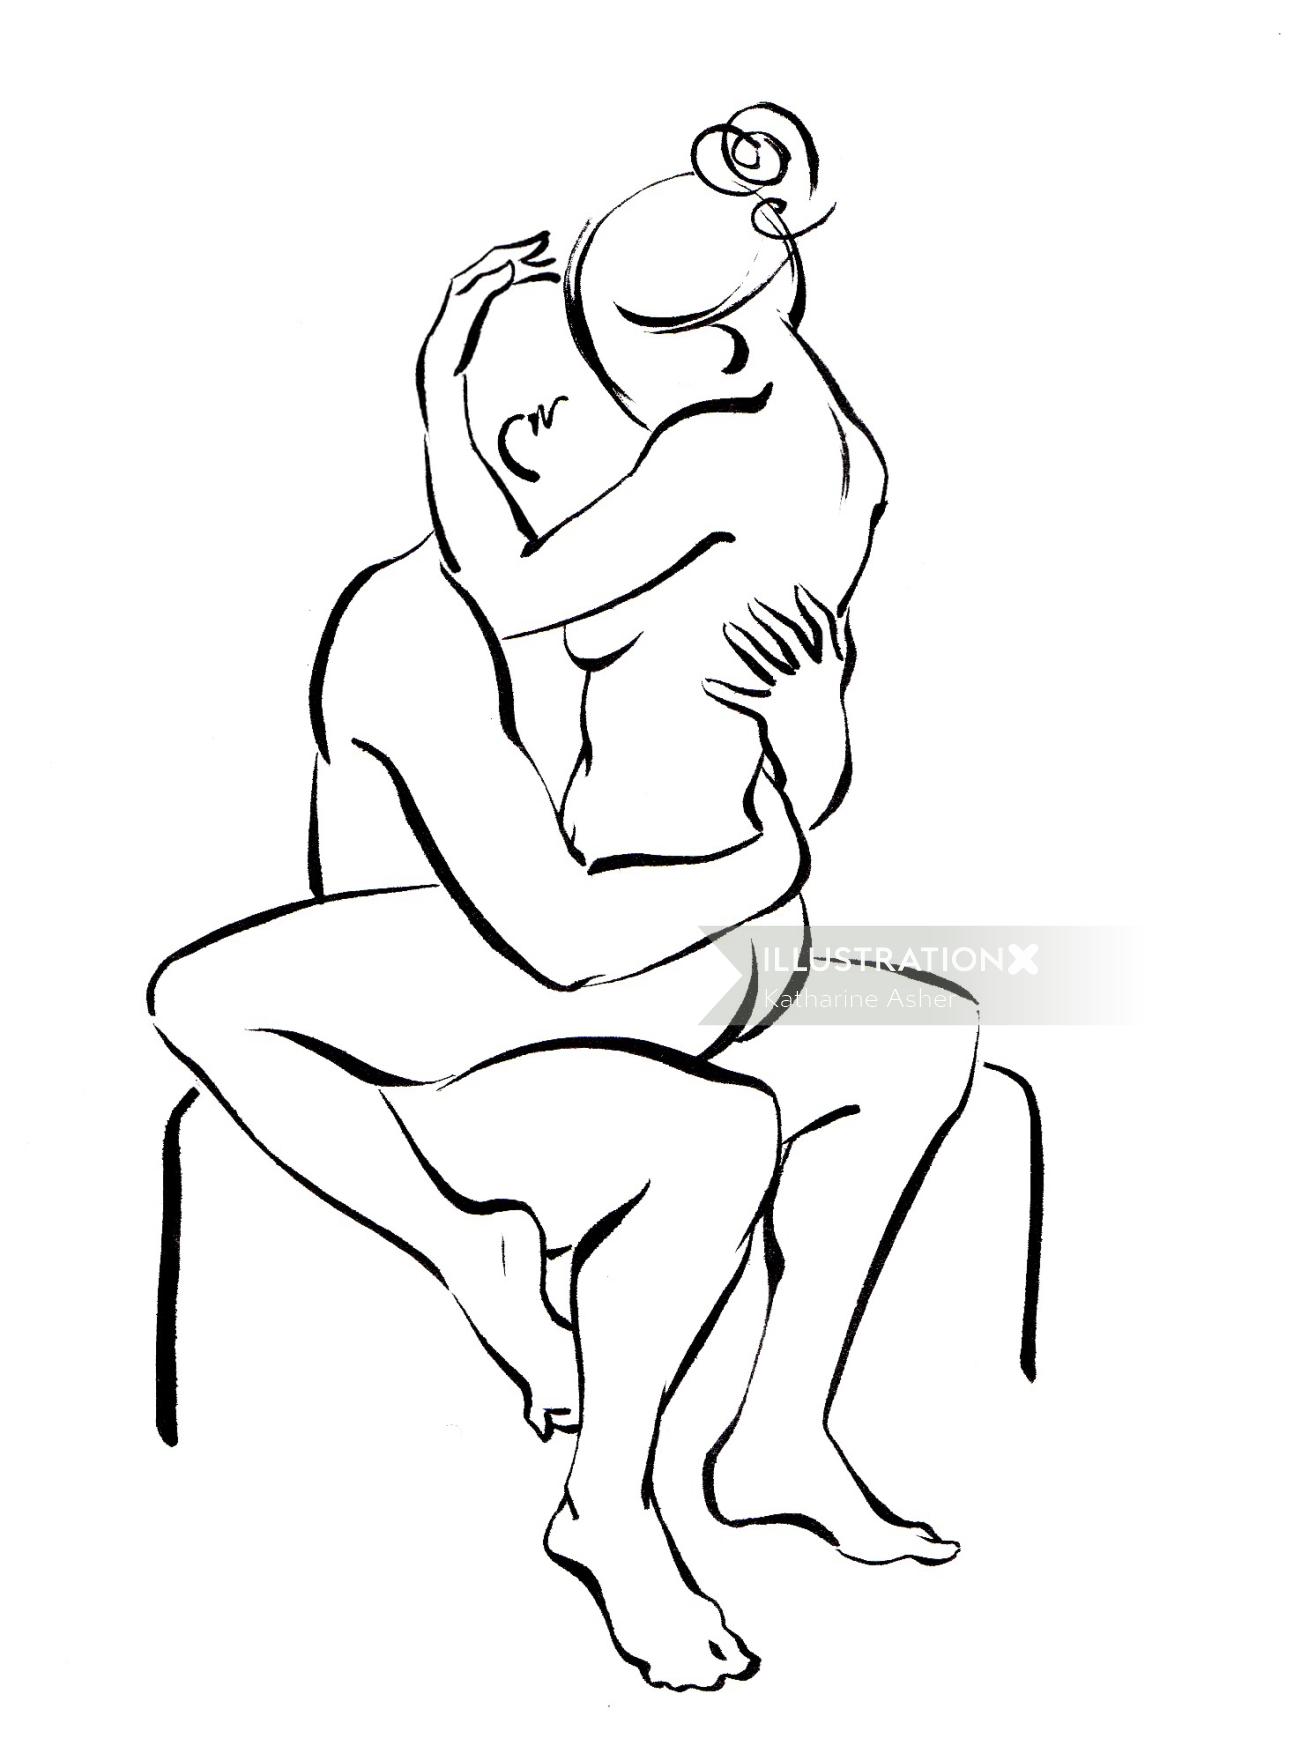 Una ilustración de posiciones sexuales clásicas